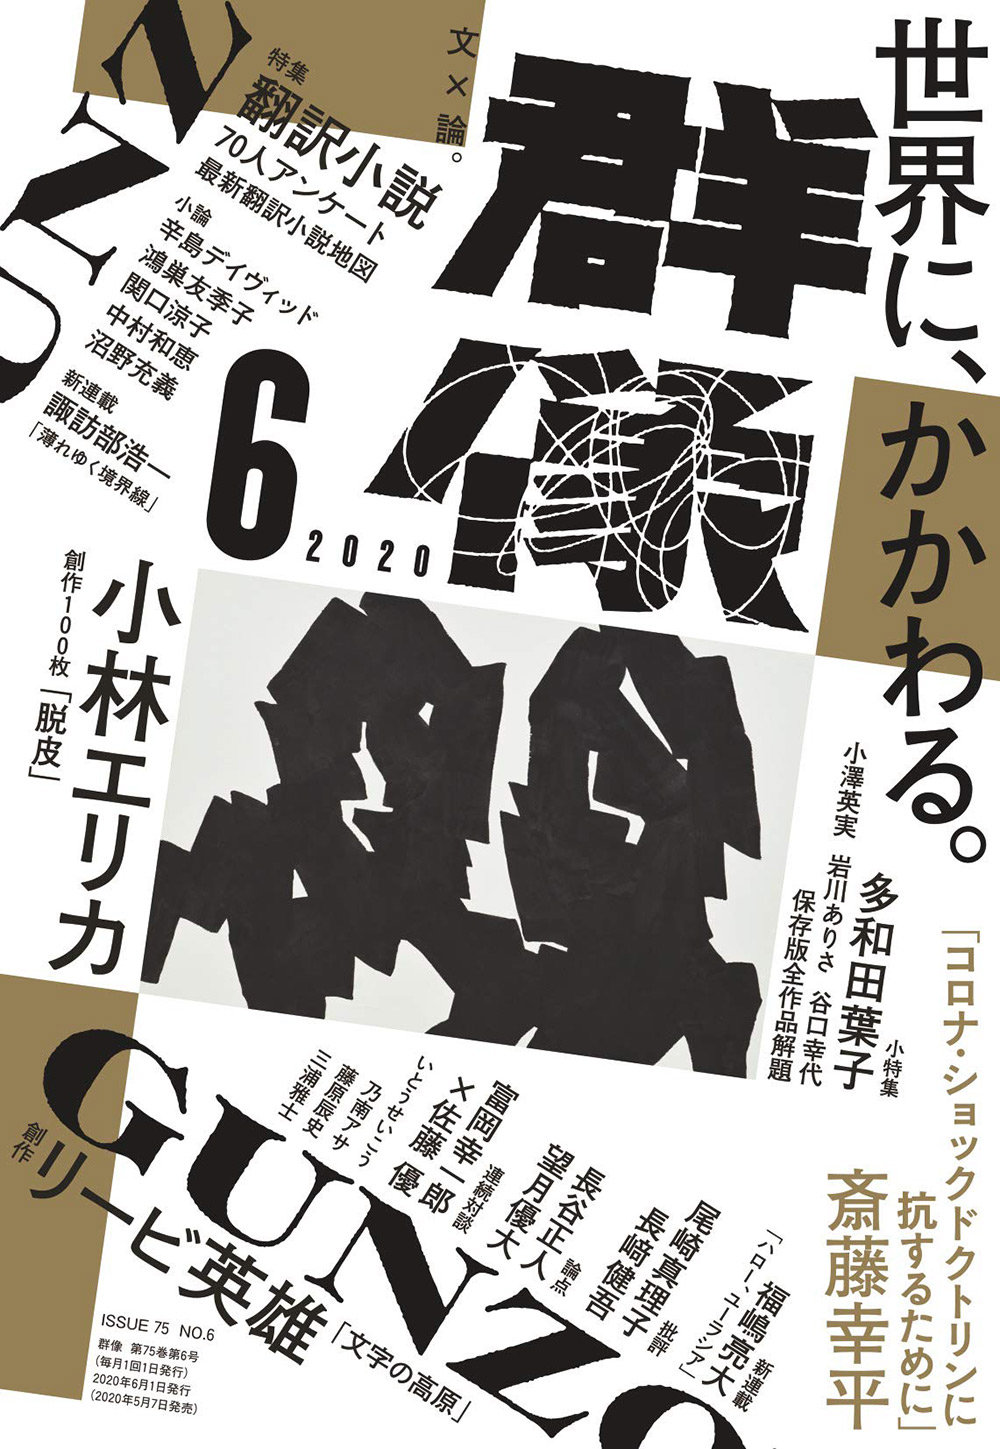 18张日本杂志《群像》封面设计